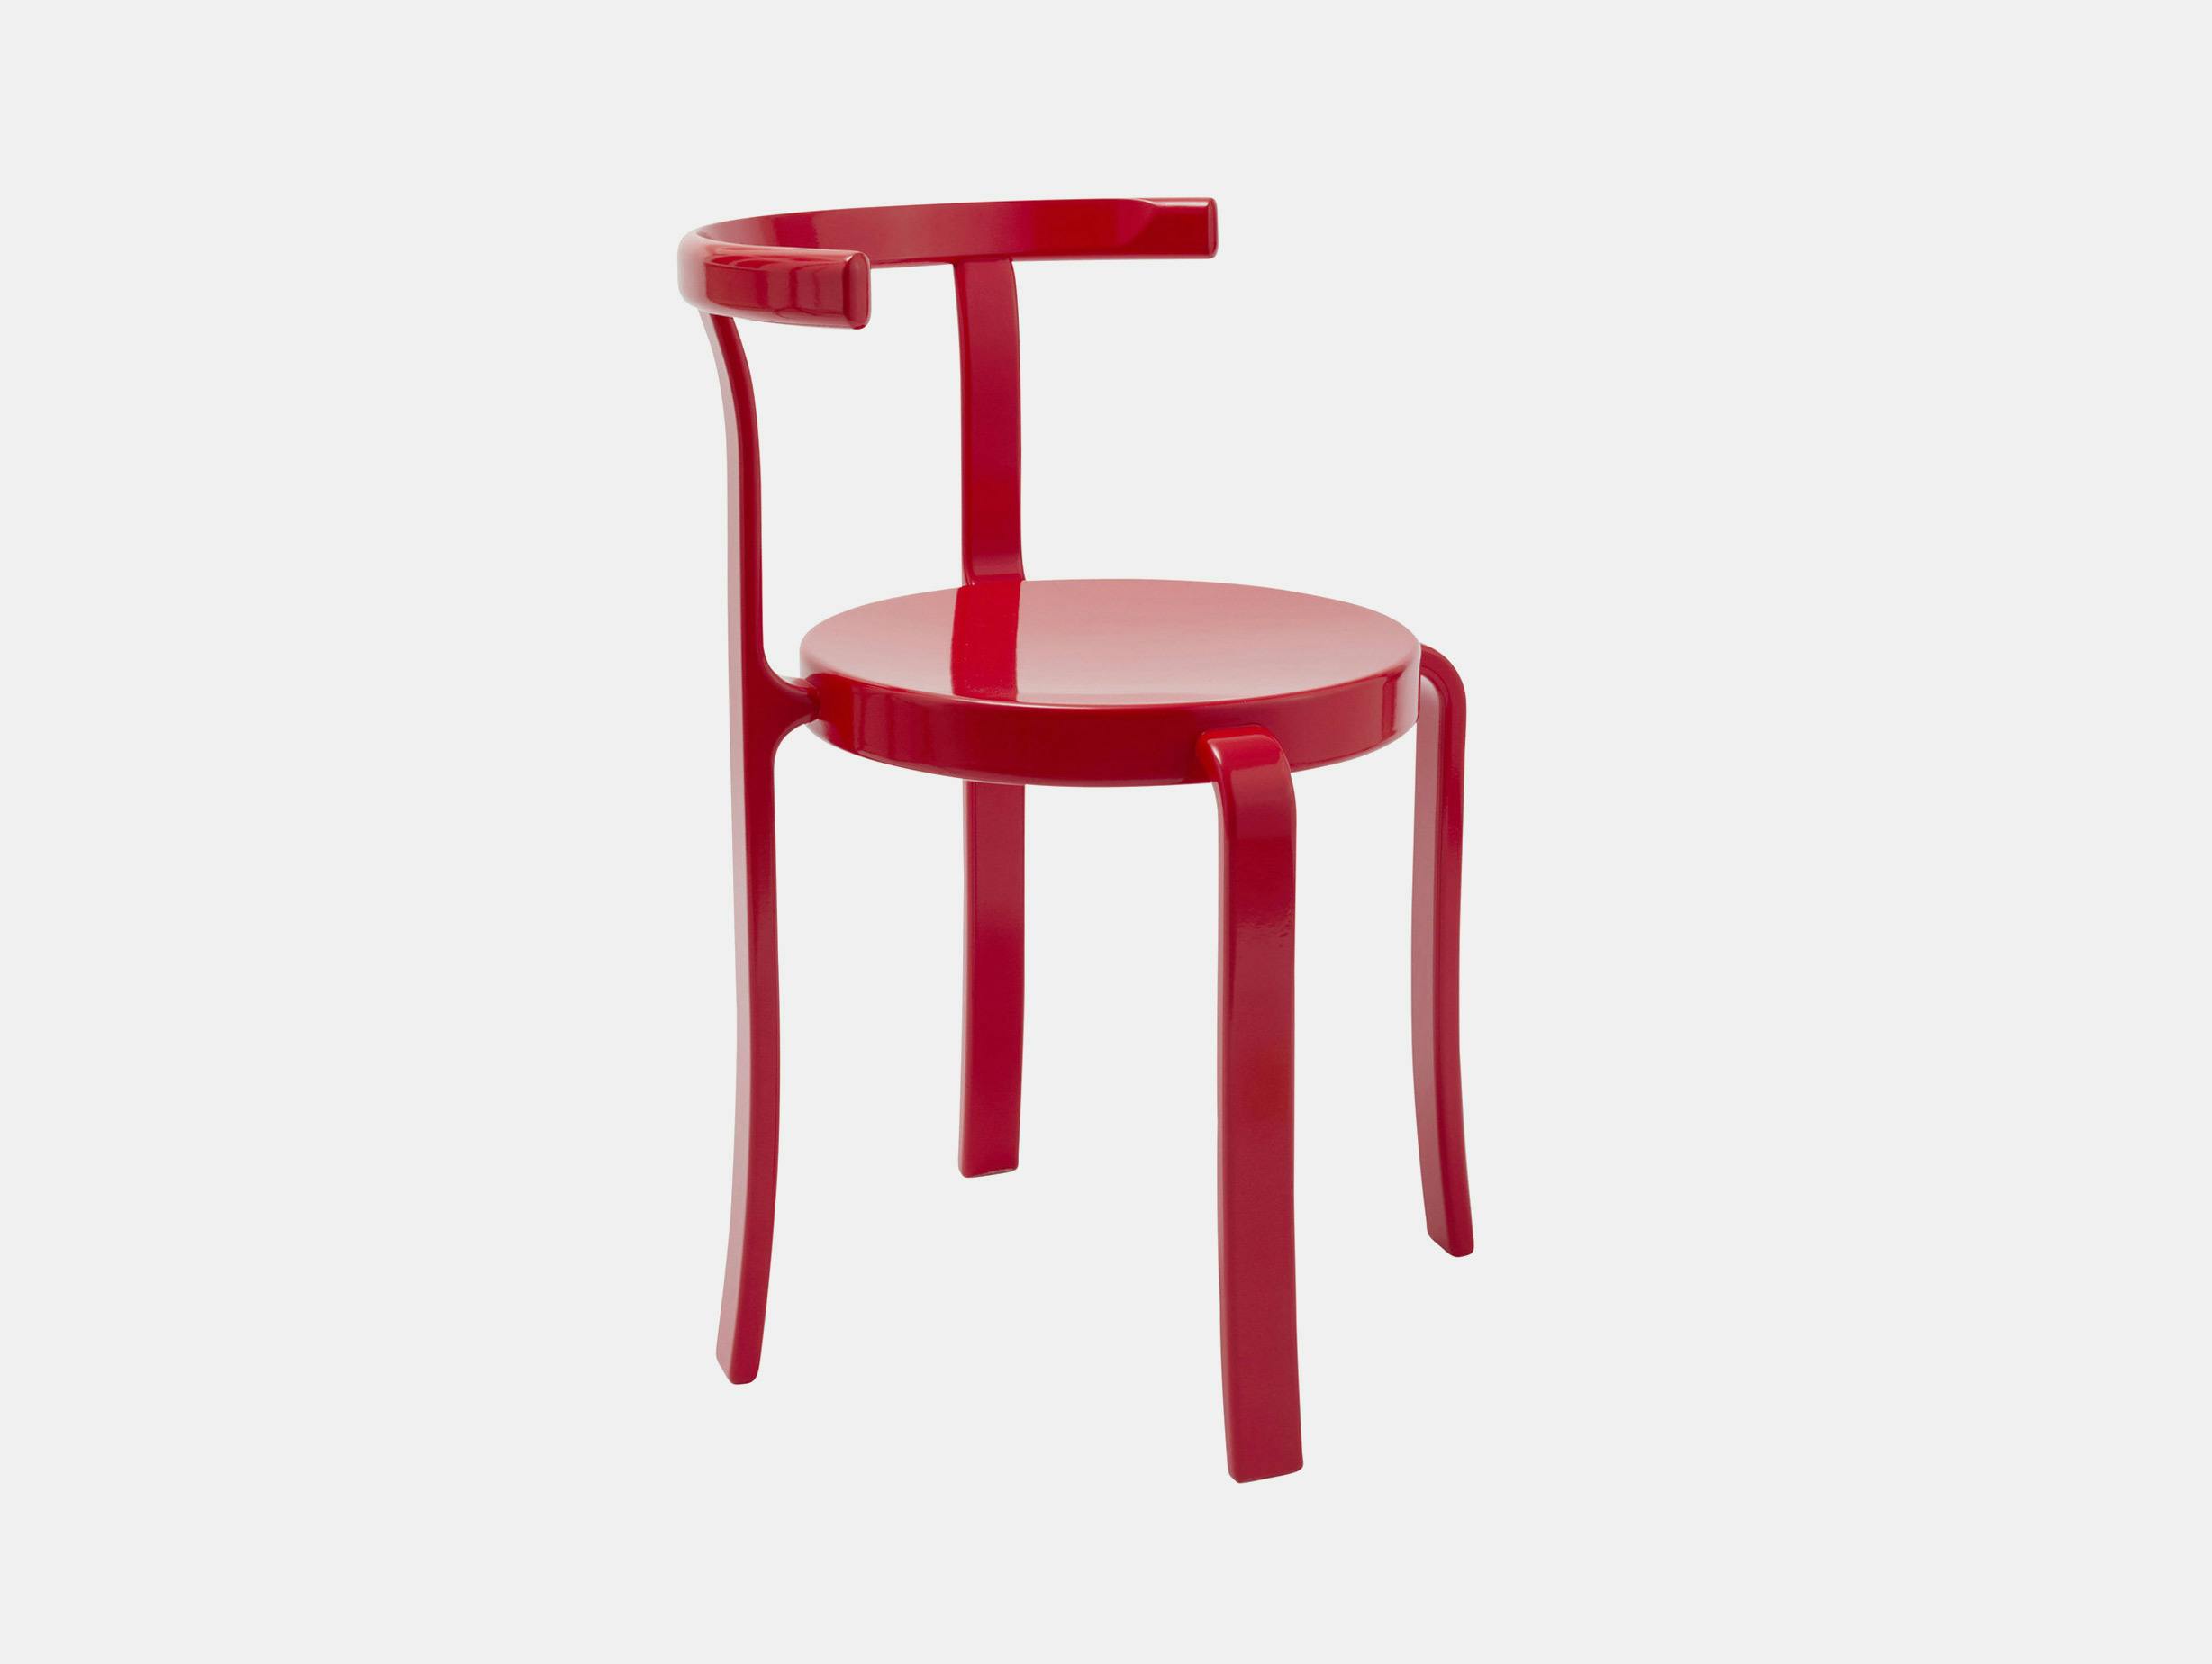 Magnus olesen rud thygesen johnny sorensen 8000 series chair red